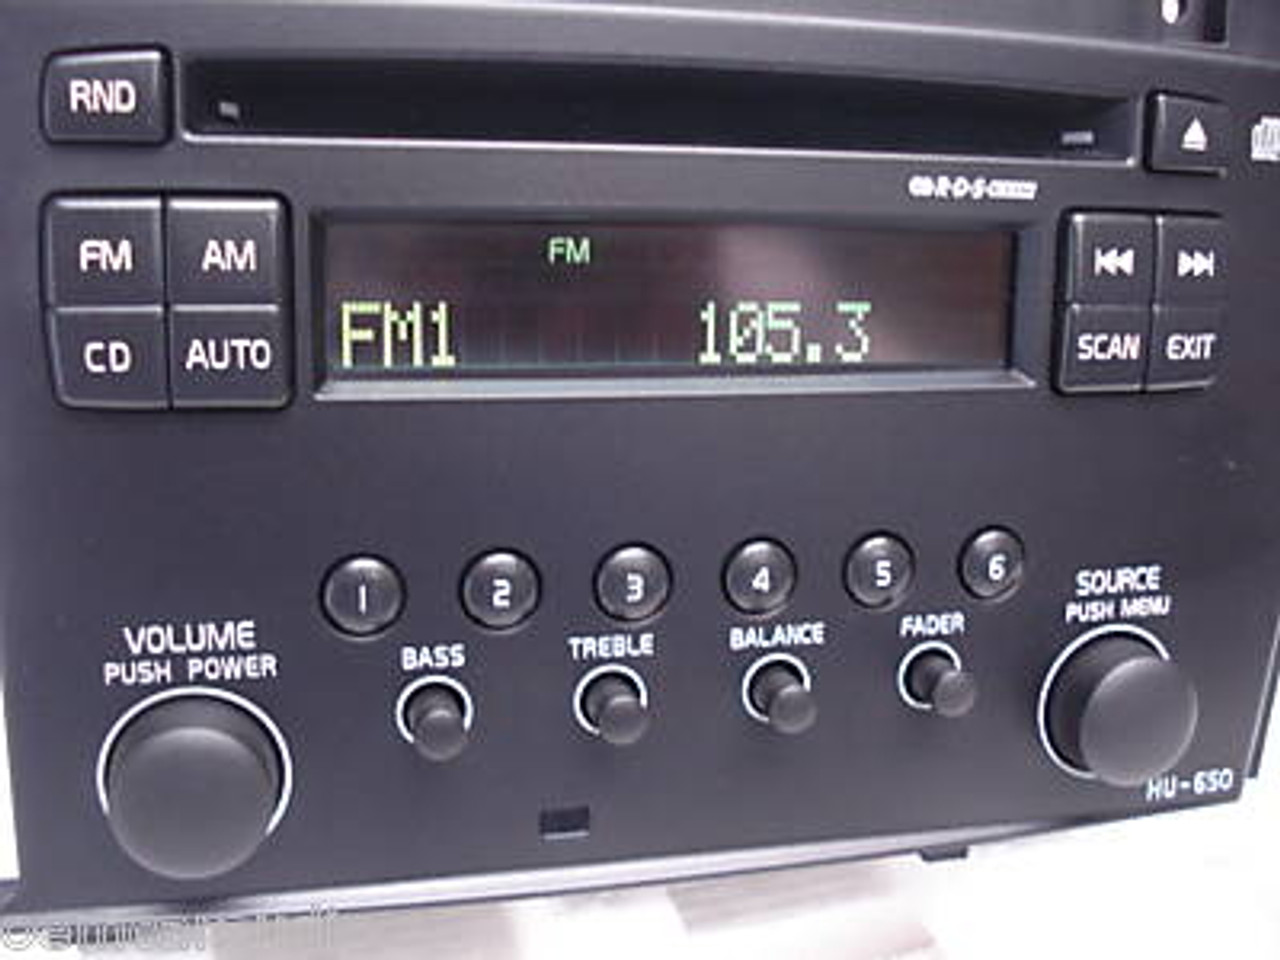 HU650 05 07 Volvo S60 V70 CD Player Radio Stereo Tape Player